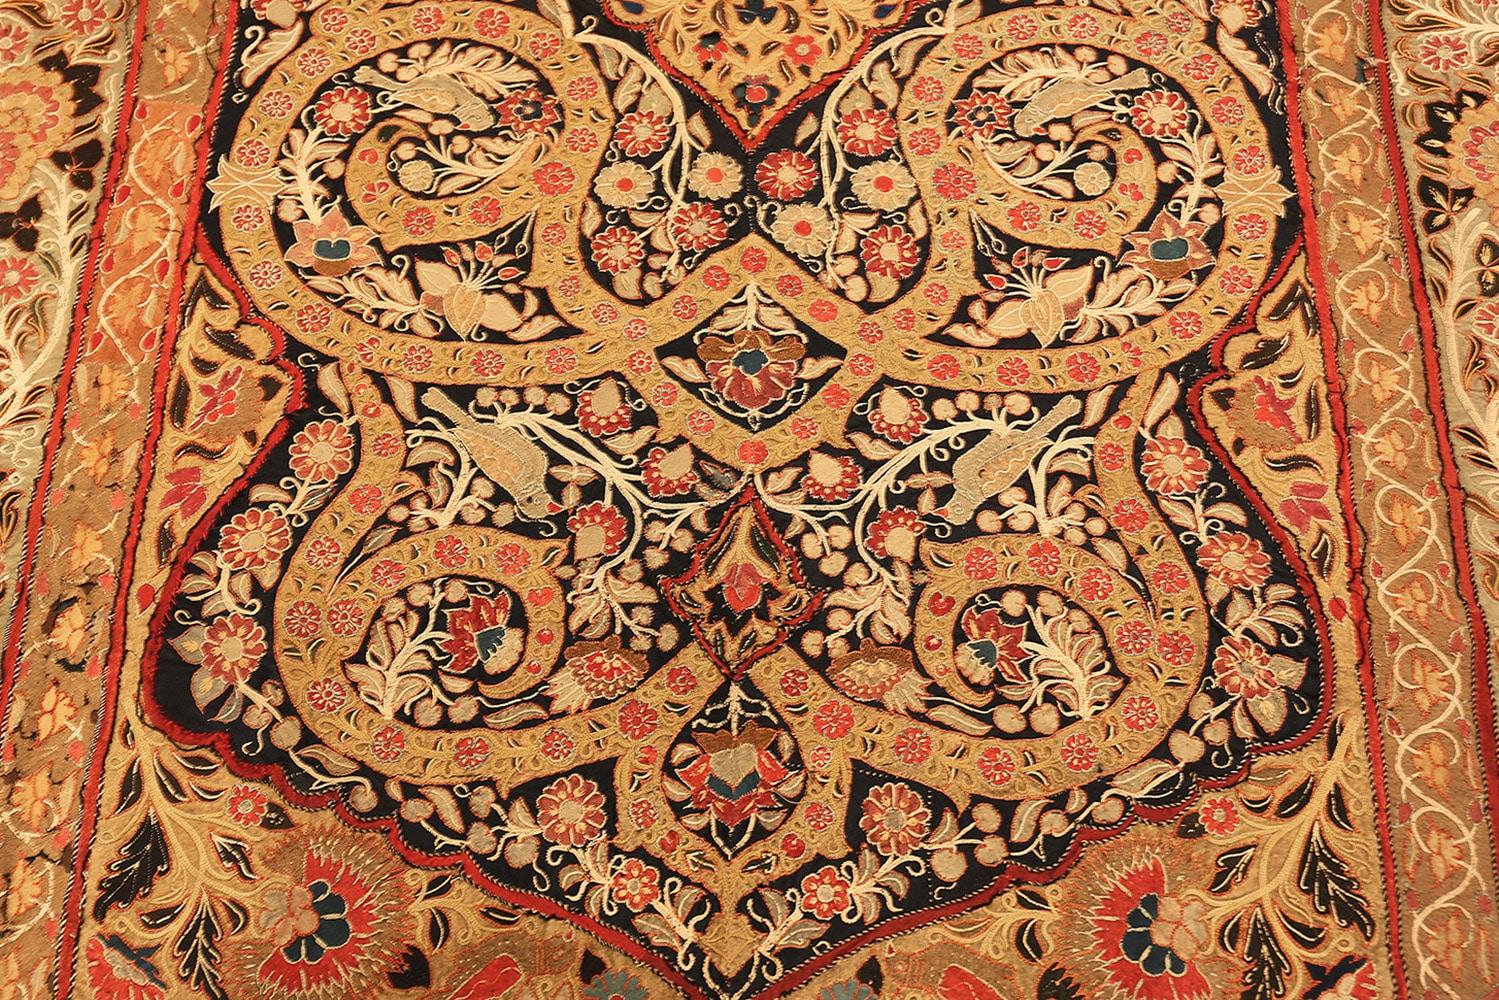 Magnifique textile ancien de broderie Rashti en soie persane 70225, pays d'origine : Perse, date circa 1900. Dimensions : 1,35 m x 2,26 m (4 ft. 5 in x 7 ft. 5 in).